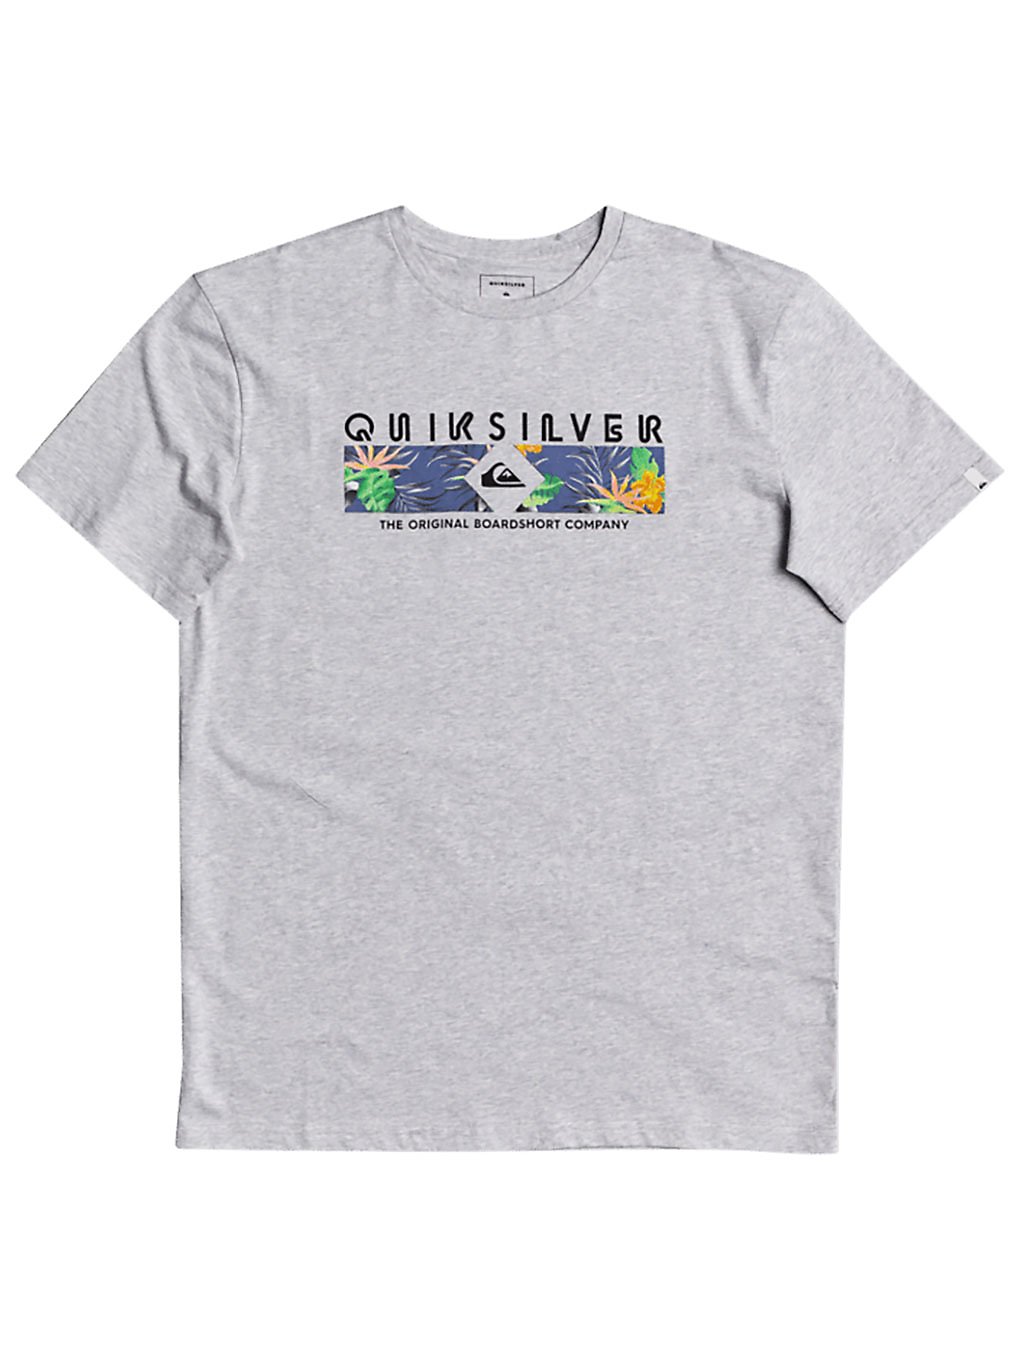 Quiksilver Distant Shores T-Shirt athletic heather